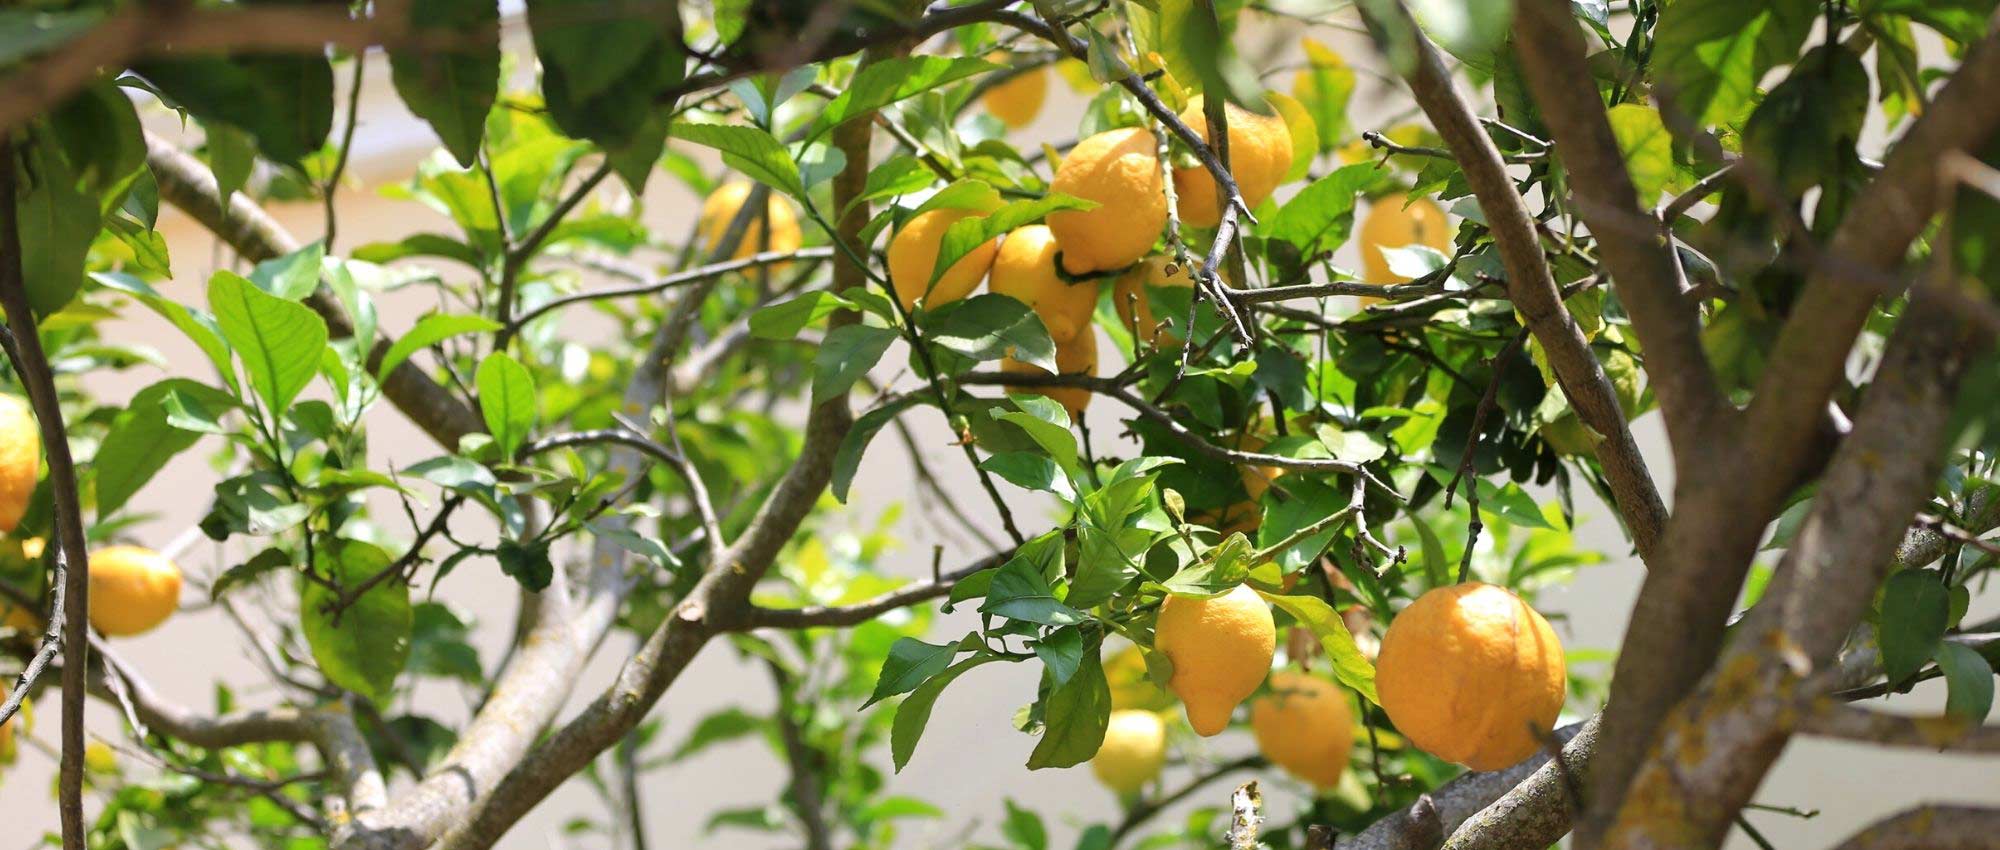 Les maladies et parasites du citronnier